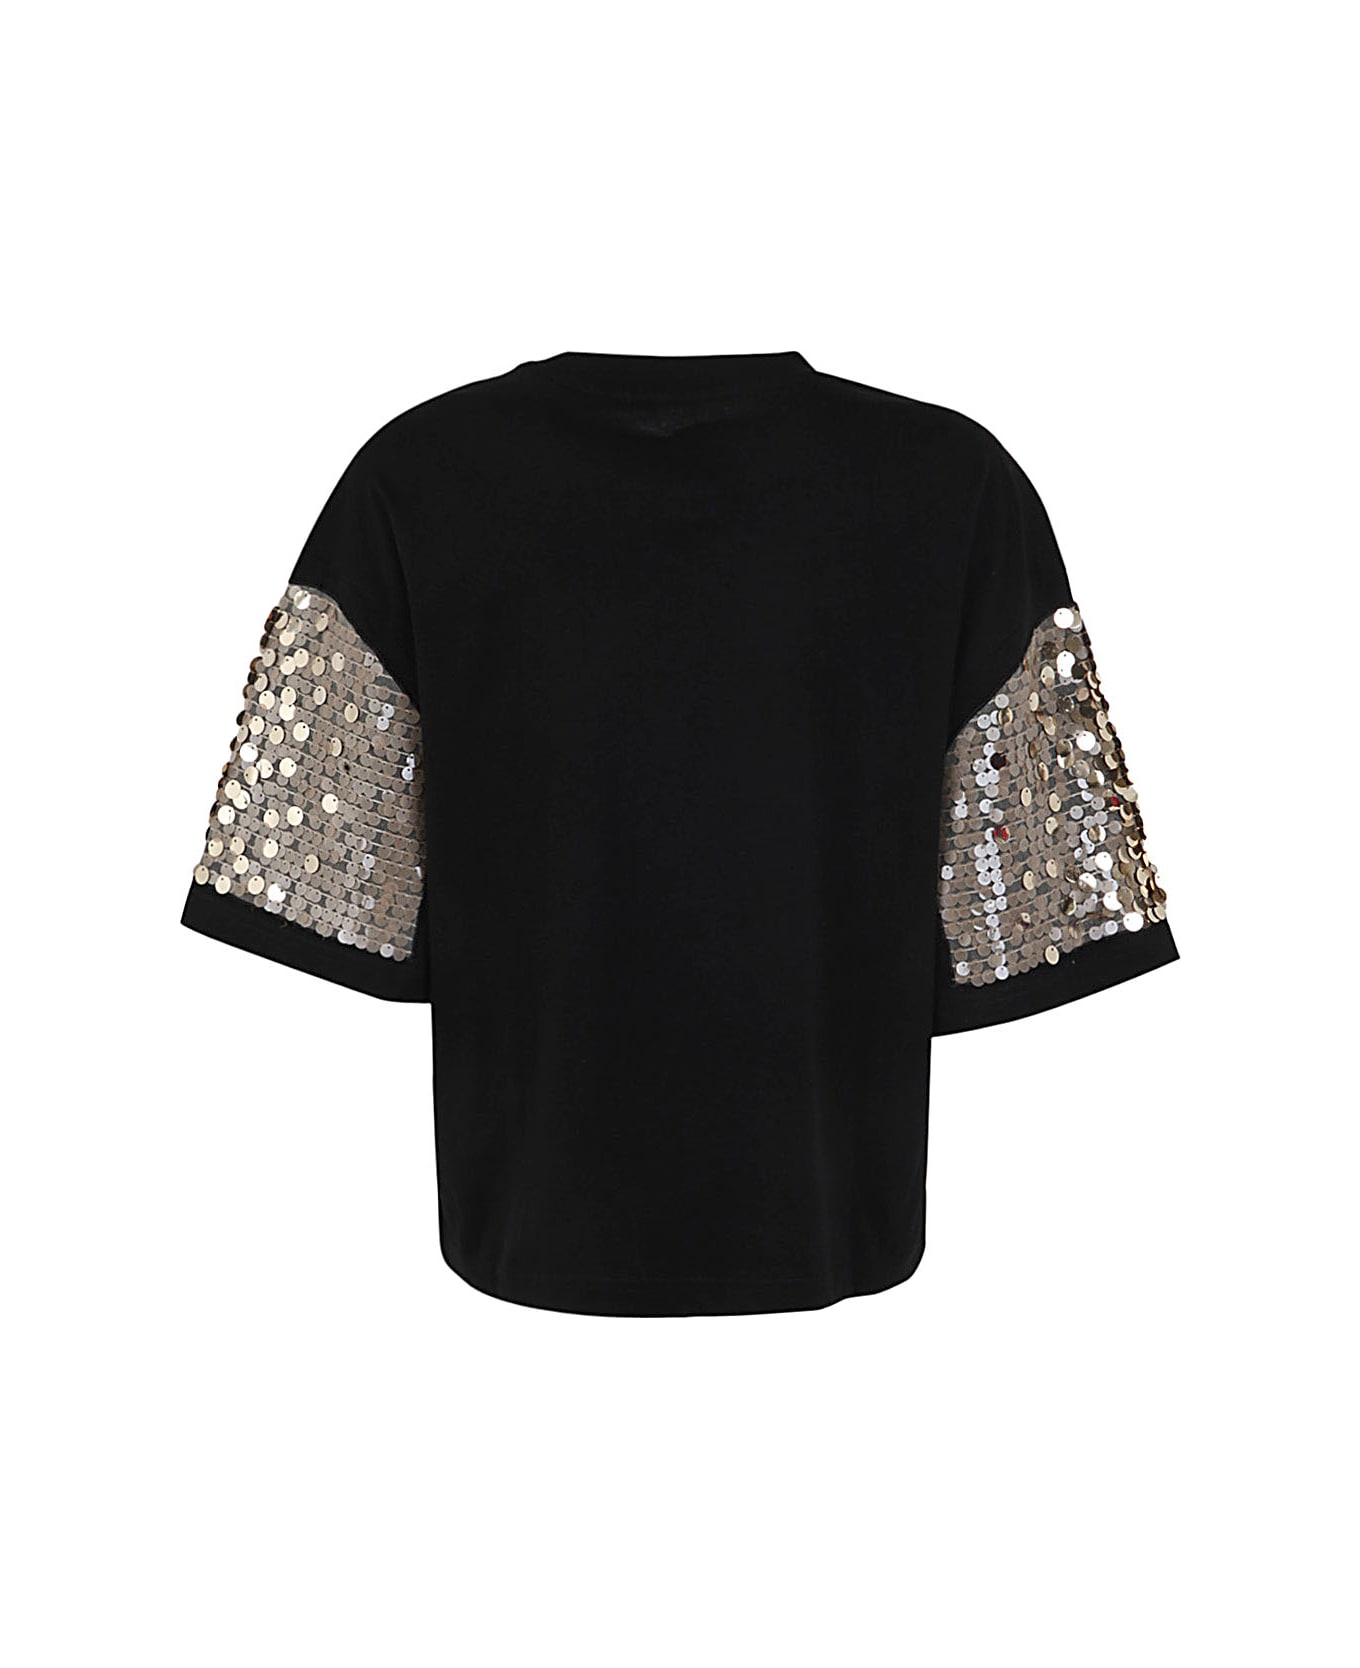 Antonio Marras T Shirt With Paillettes - Black Tシャツ